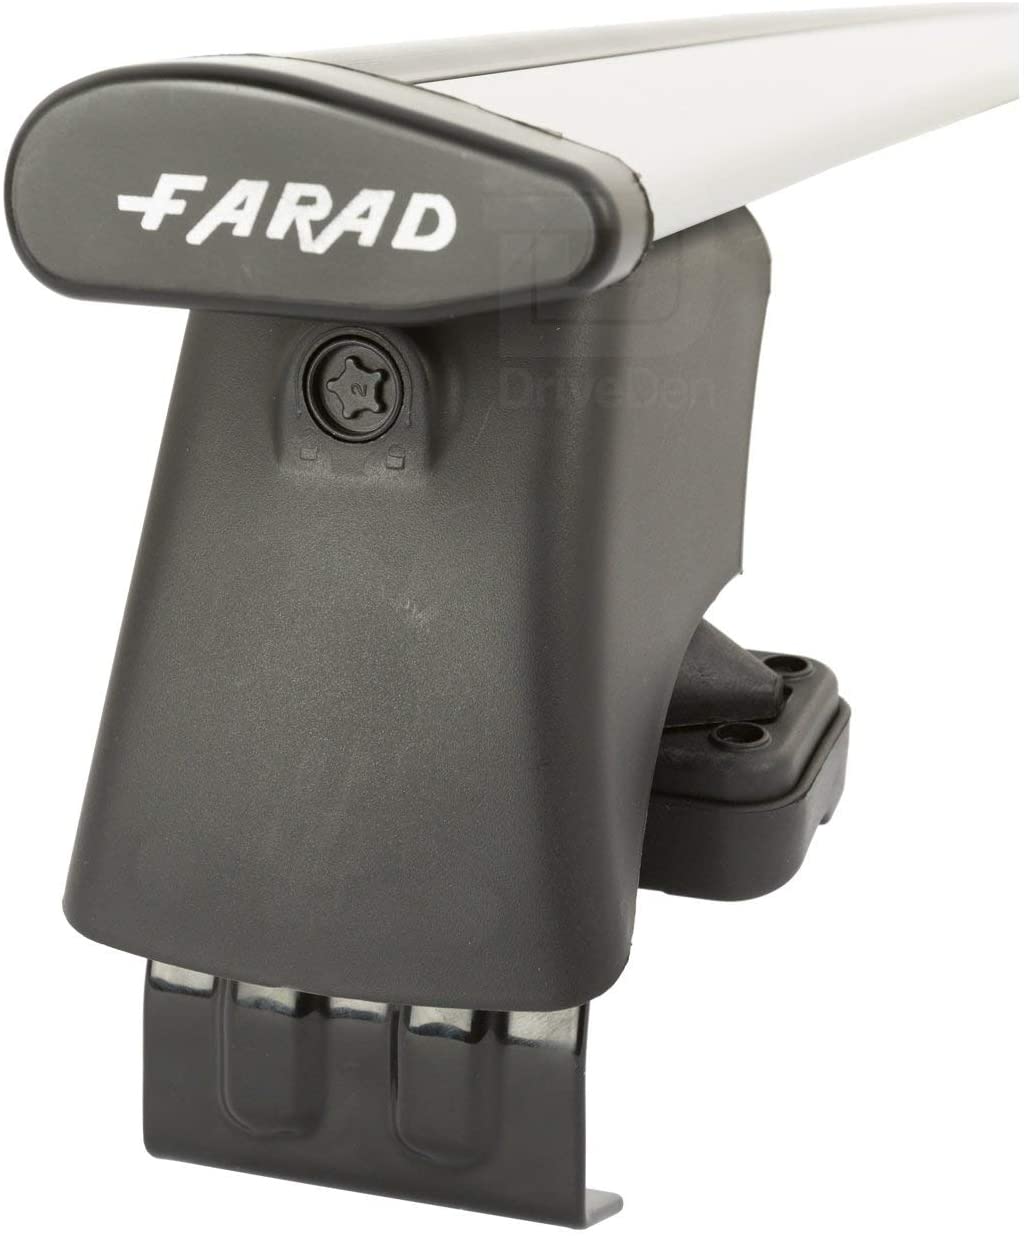 FARAD-Kit H2 per barre portatutto - Toyota Corolla 1997-2002 (senza corrimano)